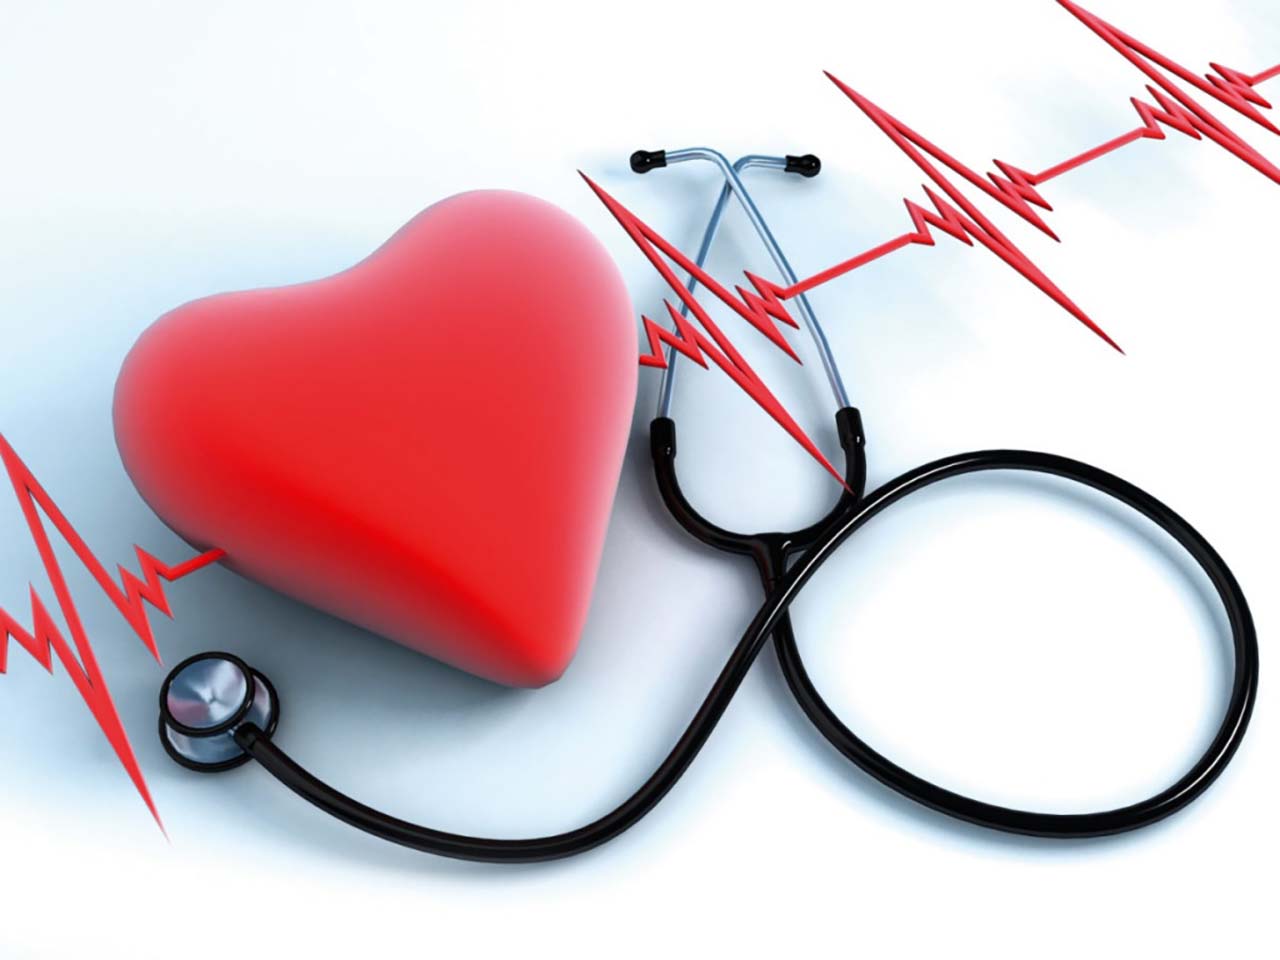   Tin tức y tế thế giới ngày 15/2: Hội chứng 'trái tim vỡ' liên quan đến ung thư và phản ứng của não khi bị căng thẳng  